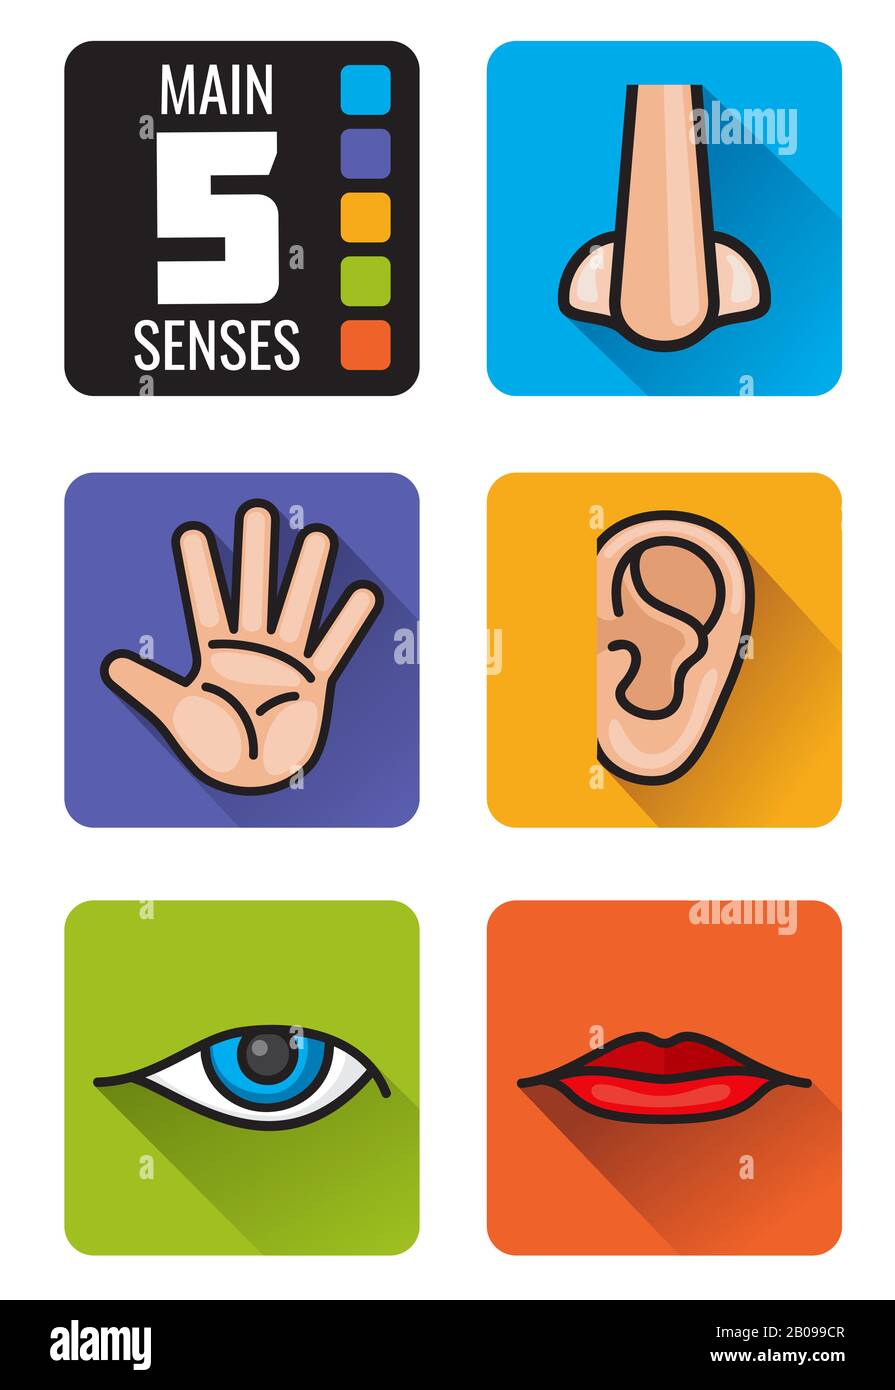 Cinq sens, nez, main, bouche, oeil, contour d'oreille icônes définies. Ensemble de sens humains sentir la vue, le goût auditif et l'illustration tactile Illustration de Vecteur